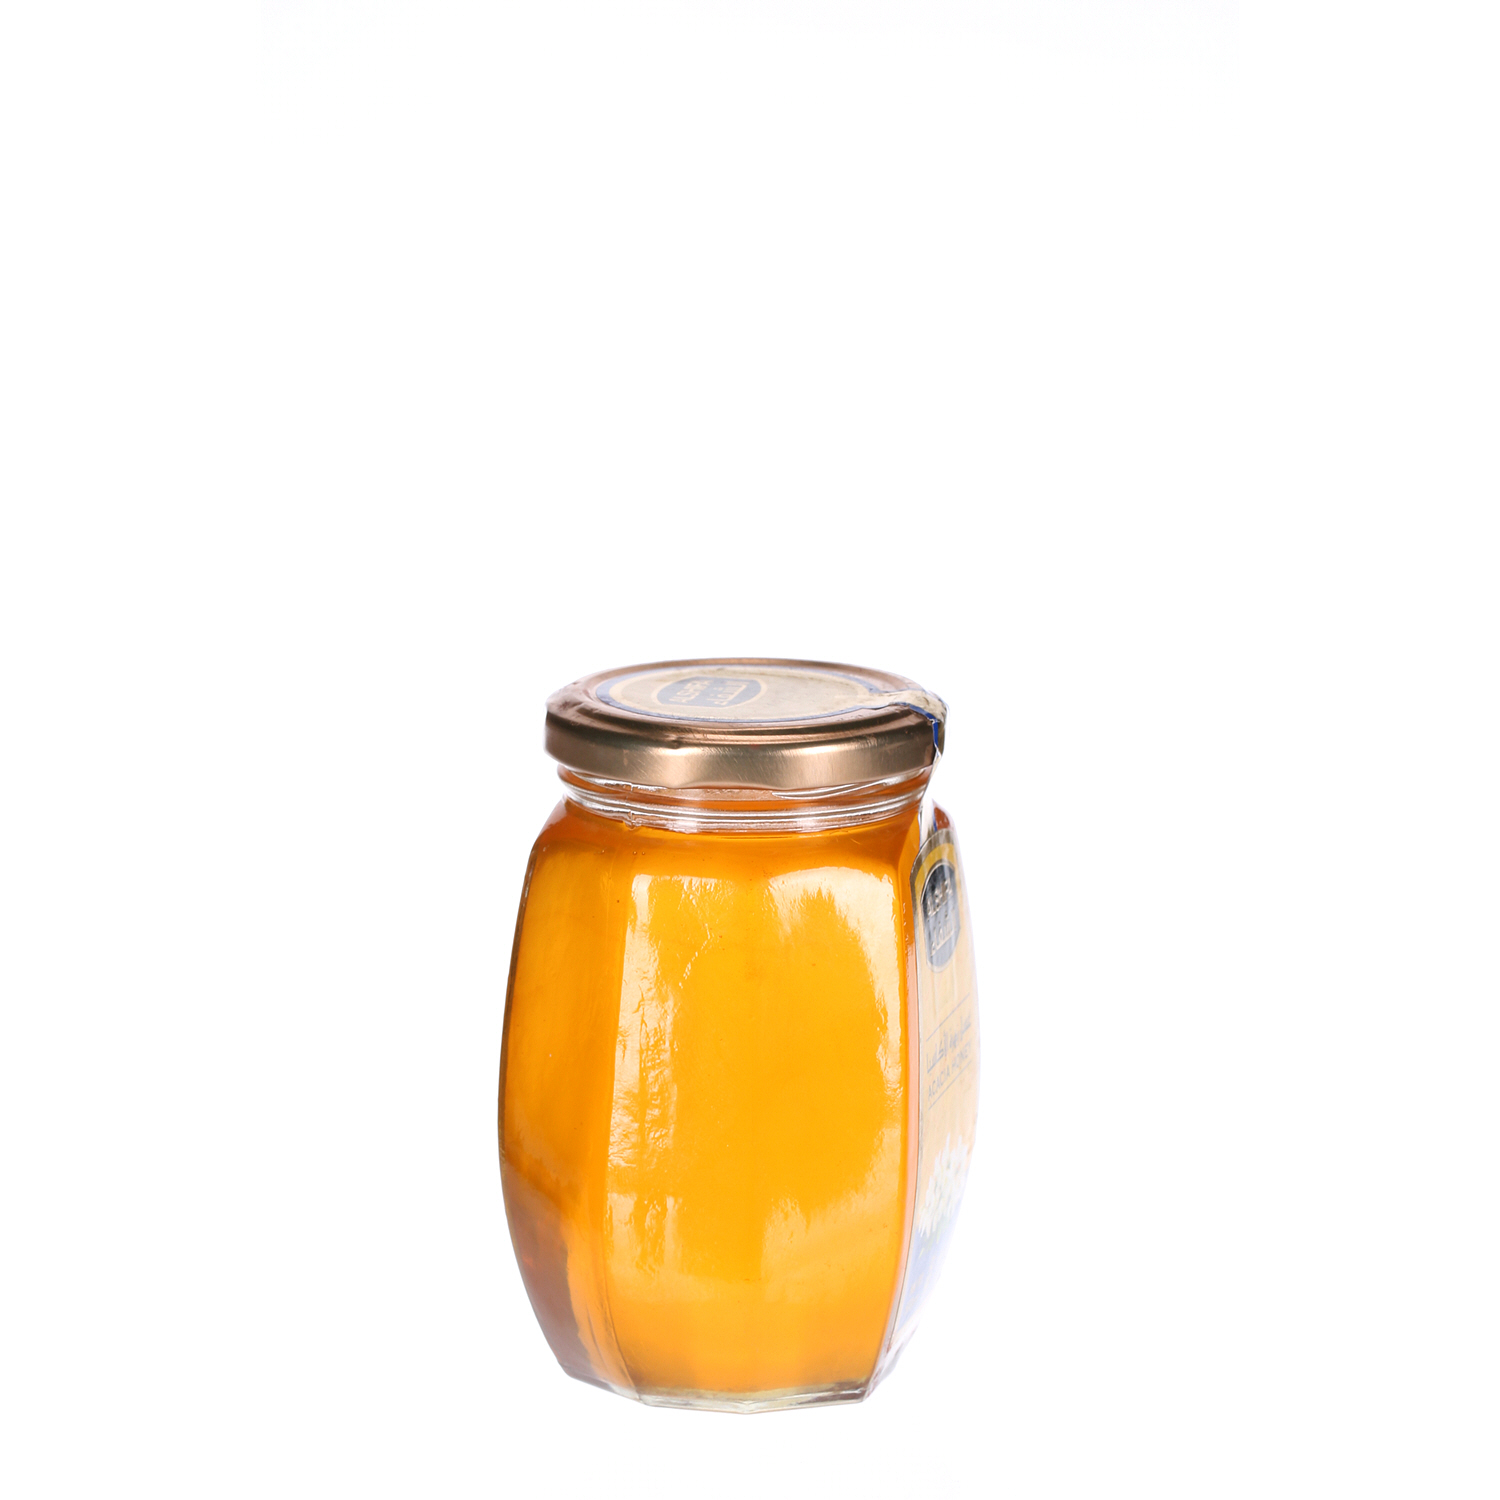 Al Shifa Honey Acacia 500 g